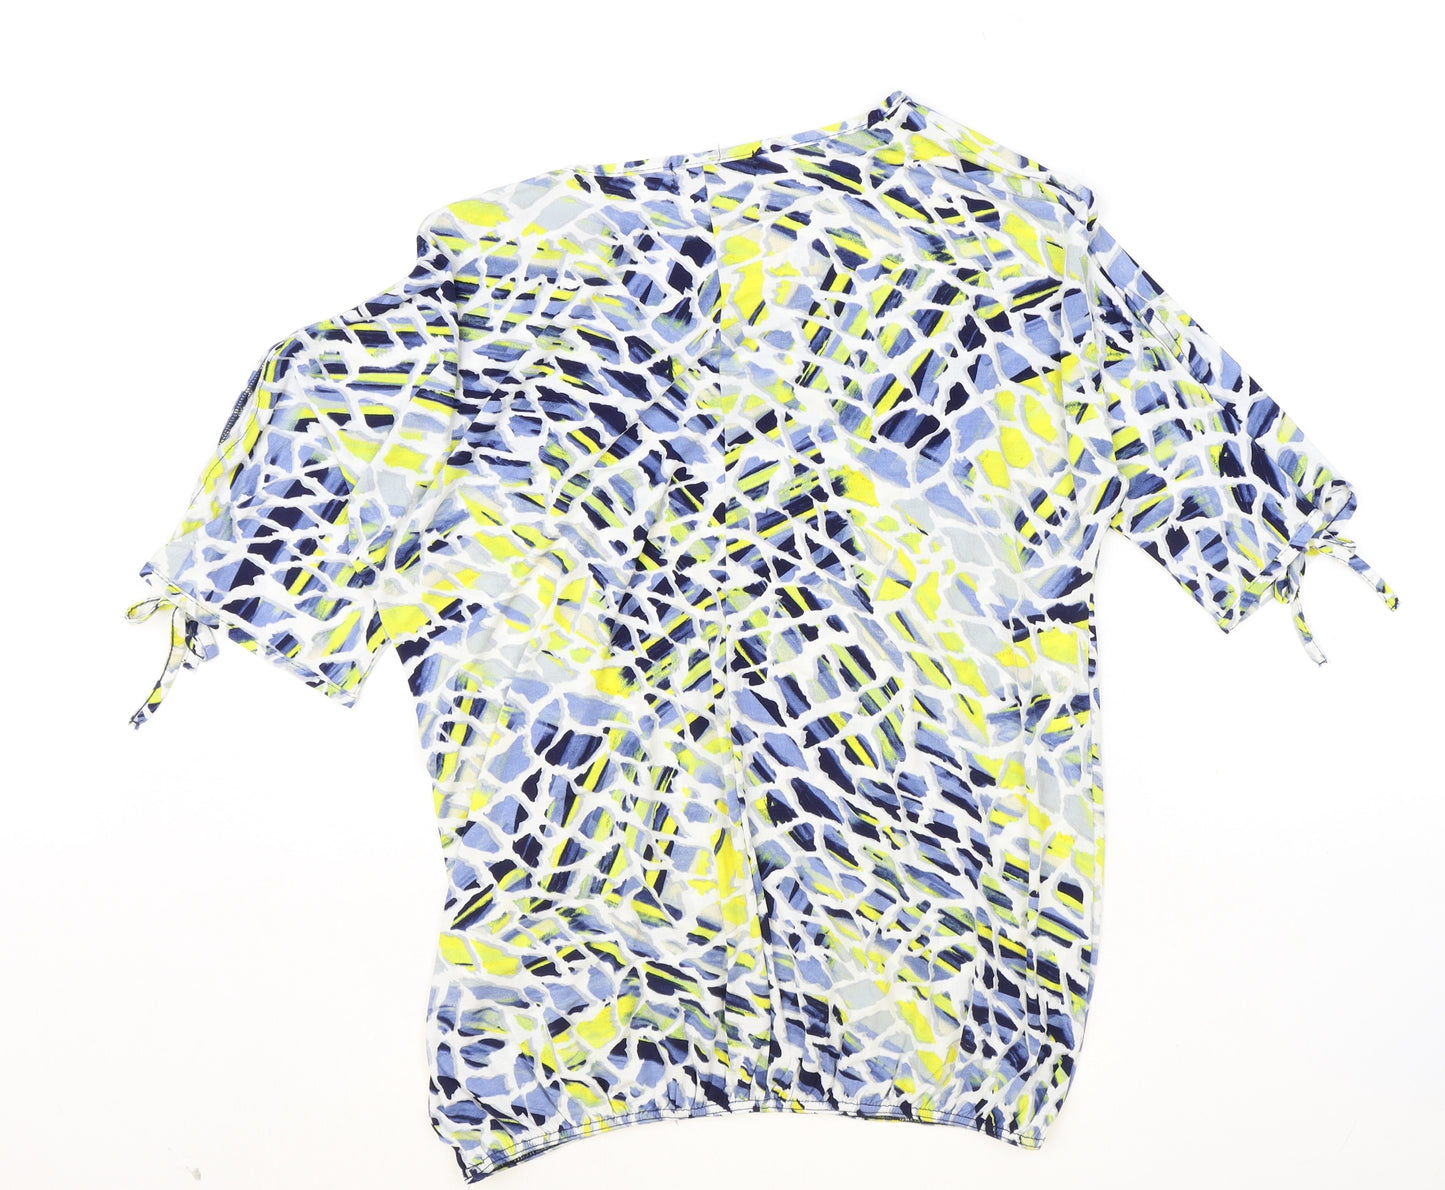 BASSINI Womens Multicoloured Geometric Polyester Basic T-Shirt Size 14 Round Neck